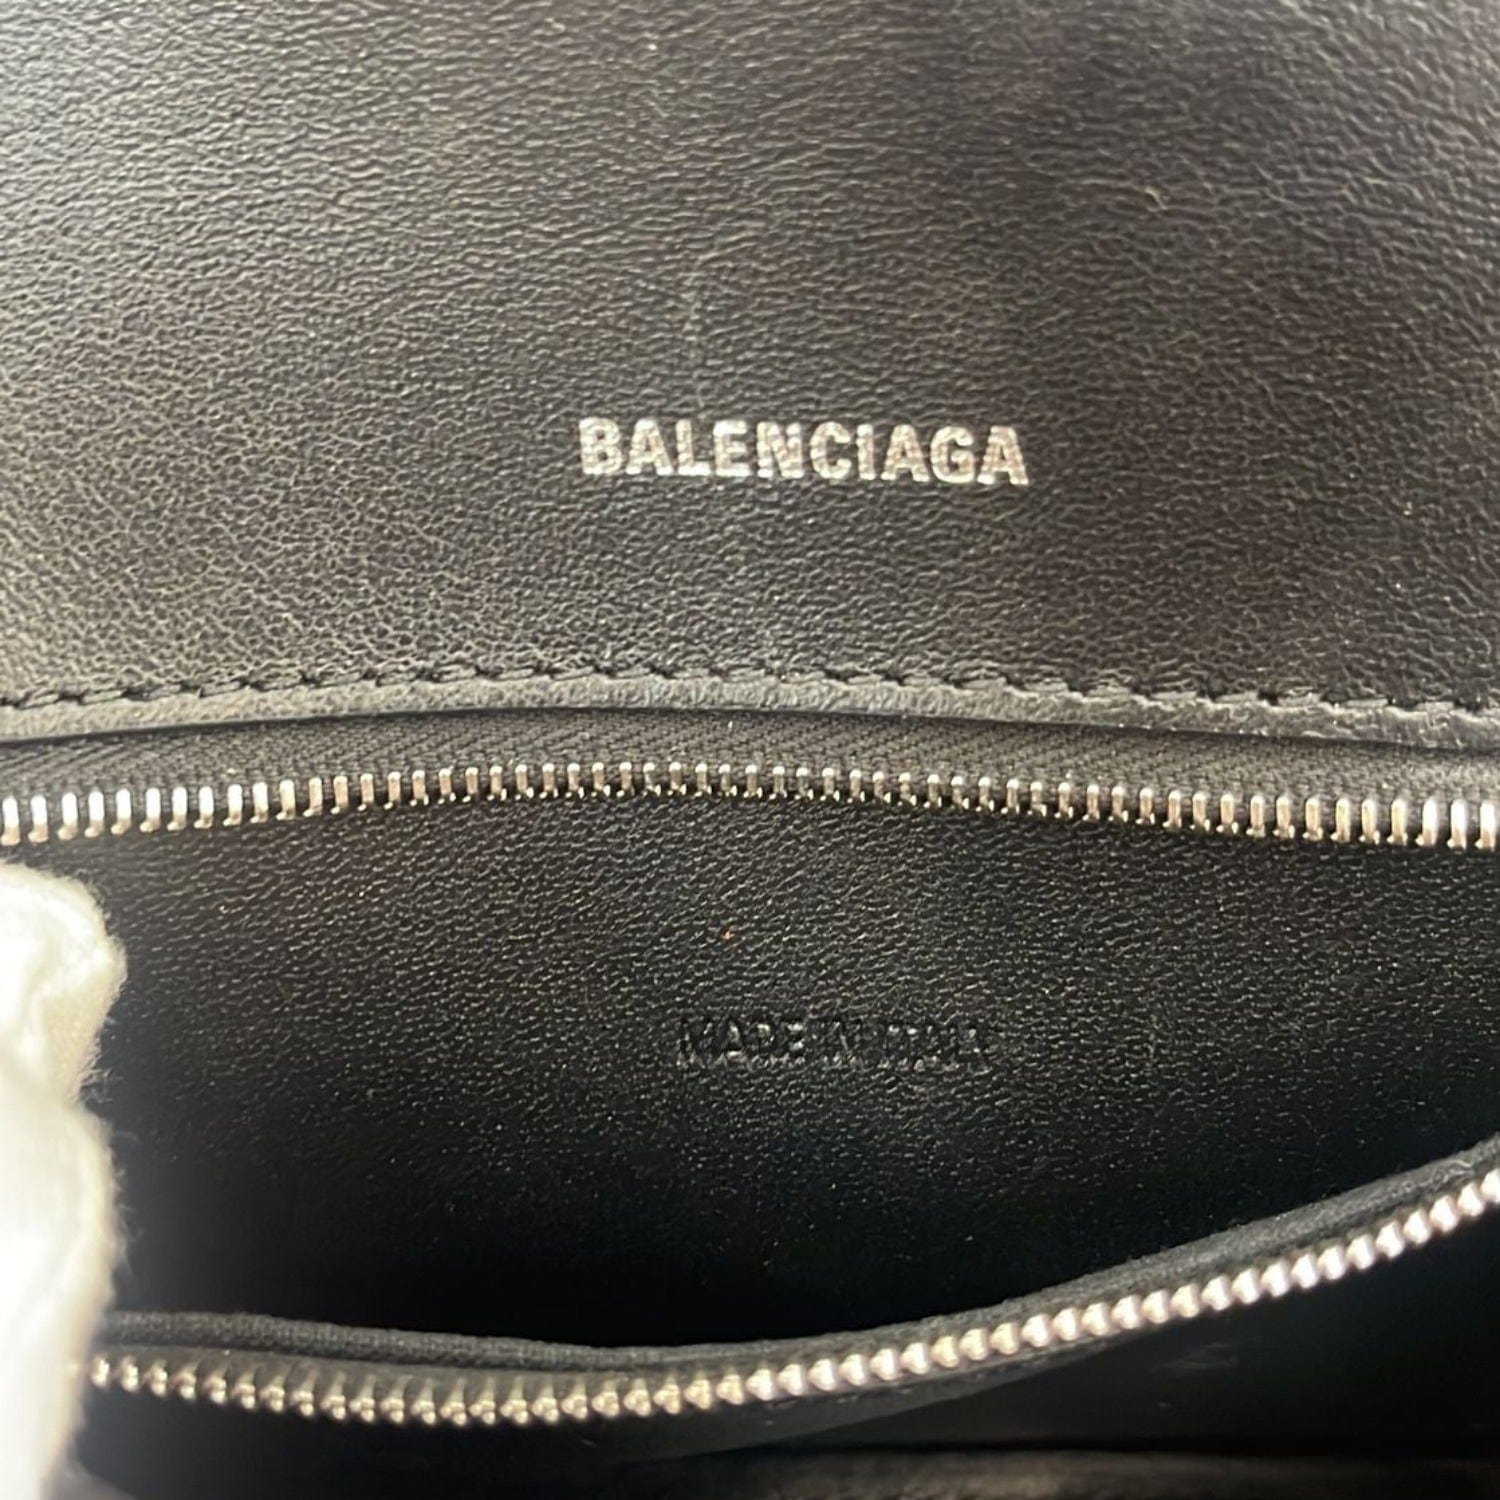 Balenciaga  2015 Black Papier A4 Leather Tote Bag  VSP Consignment